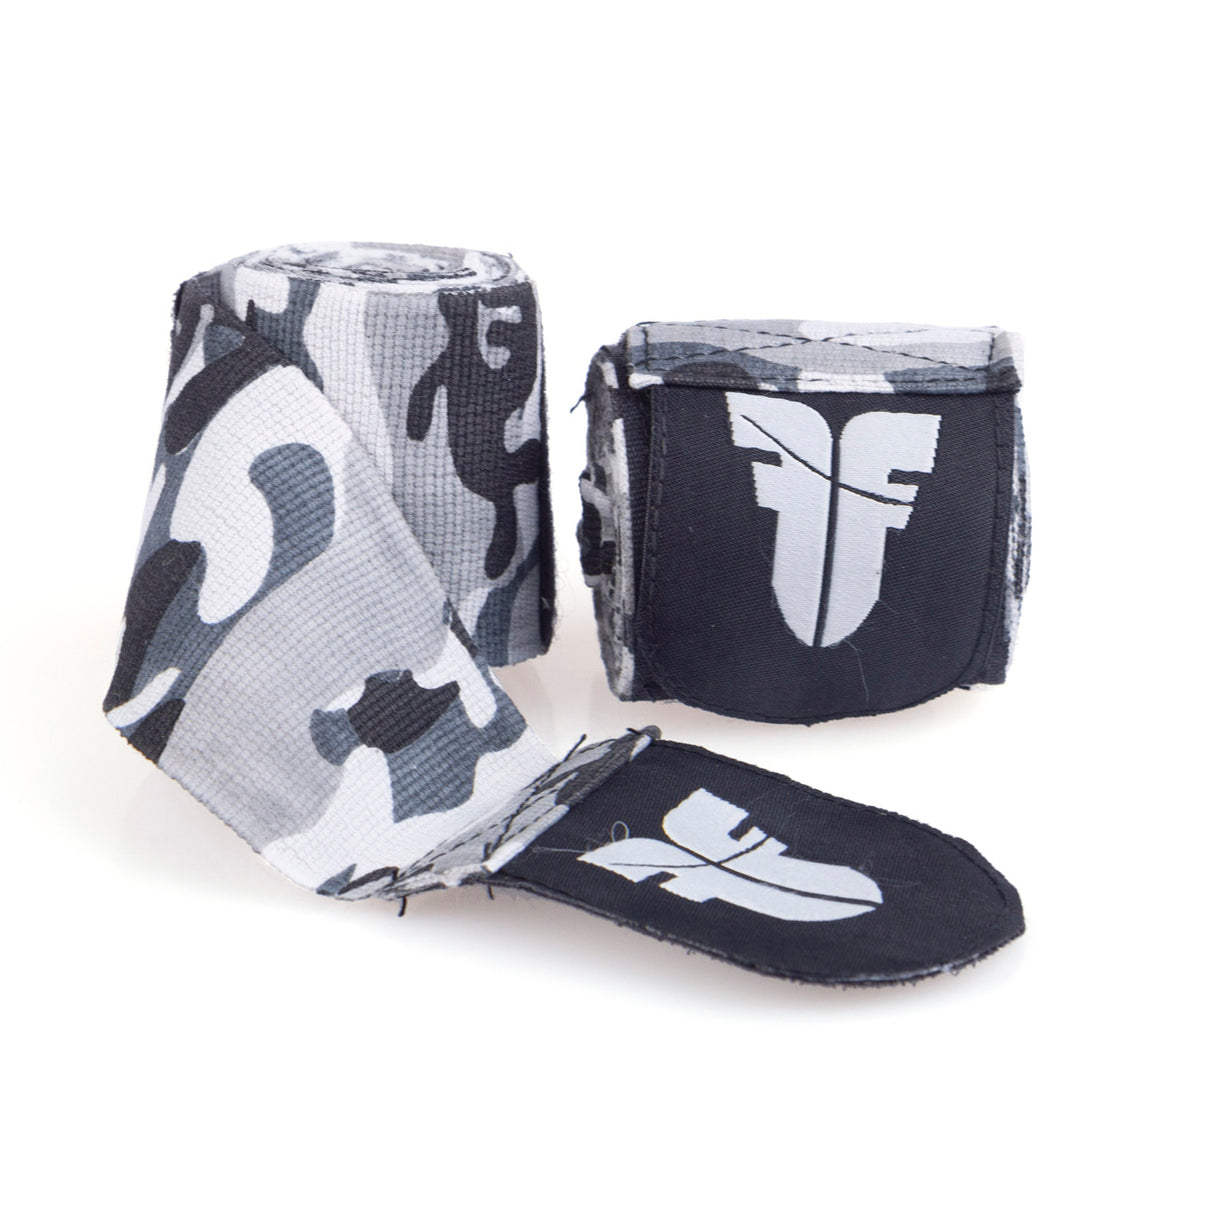 Bandages de chasse - gris camouflage, FHW-001GC